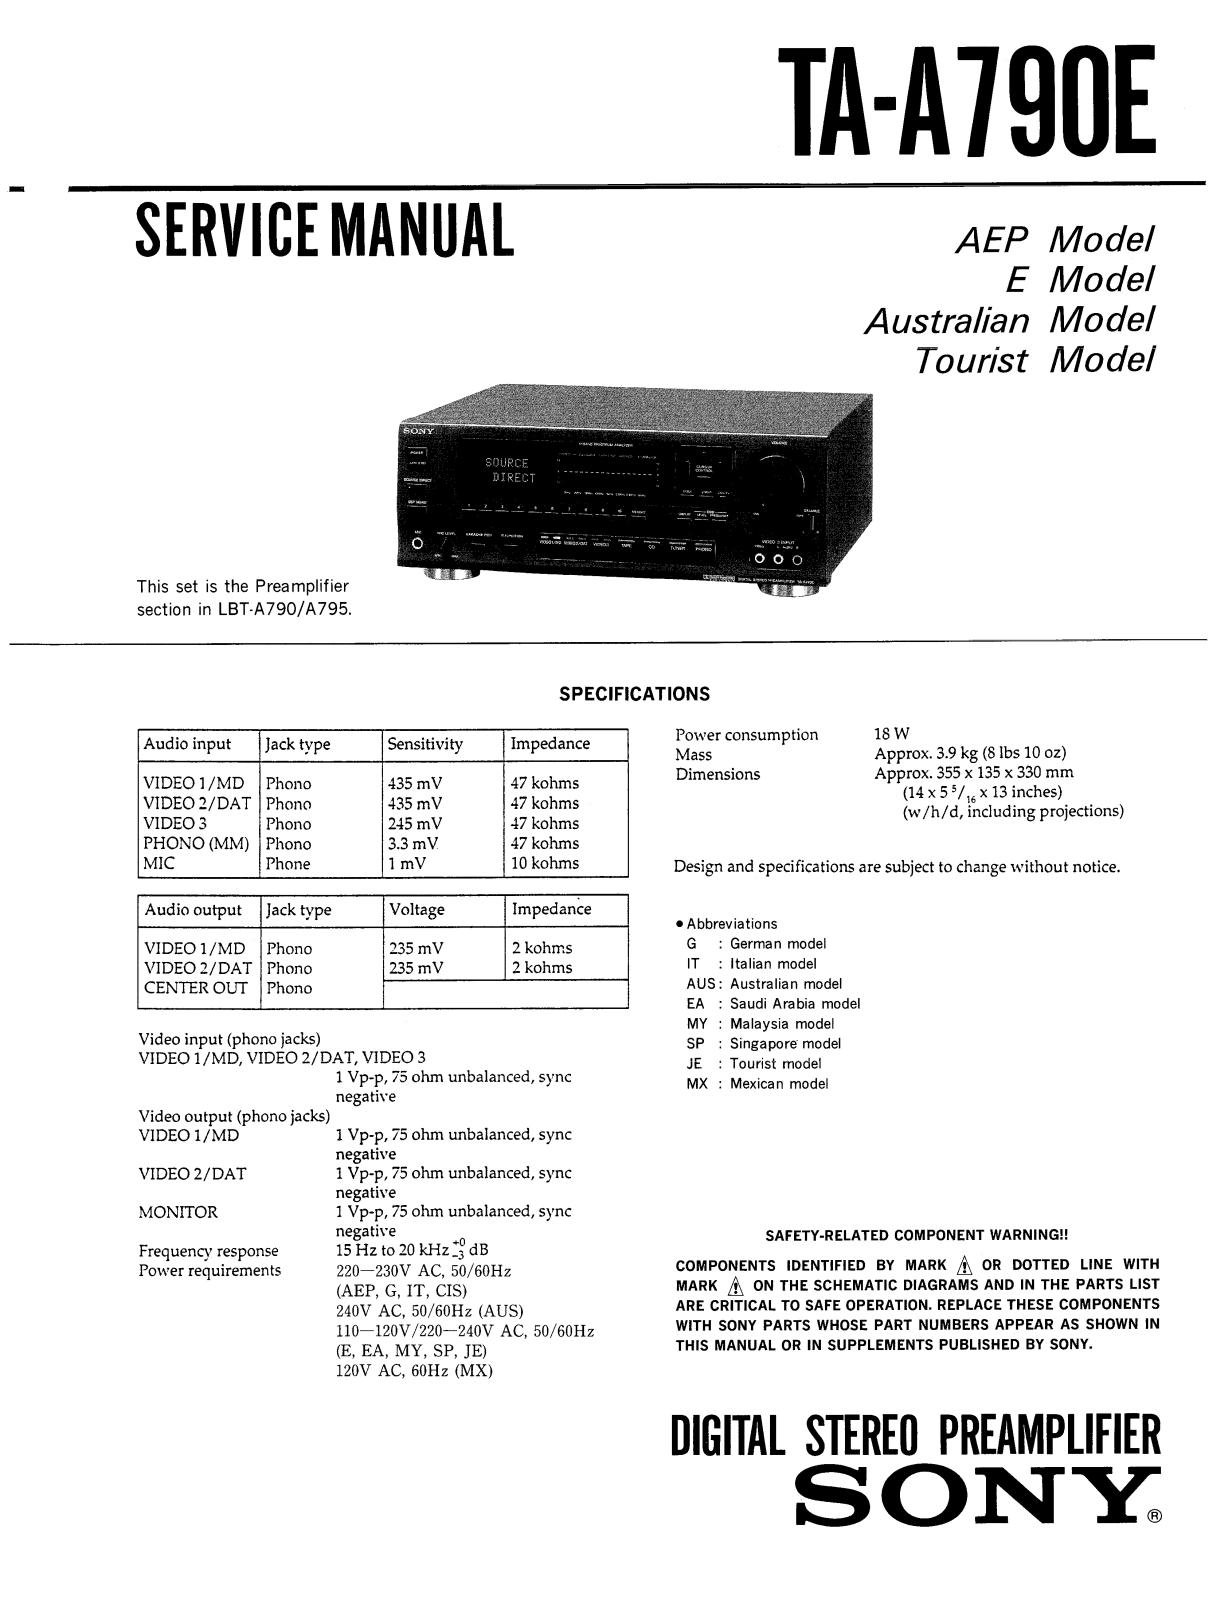 Sony TA-A790E Service Manual